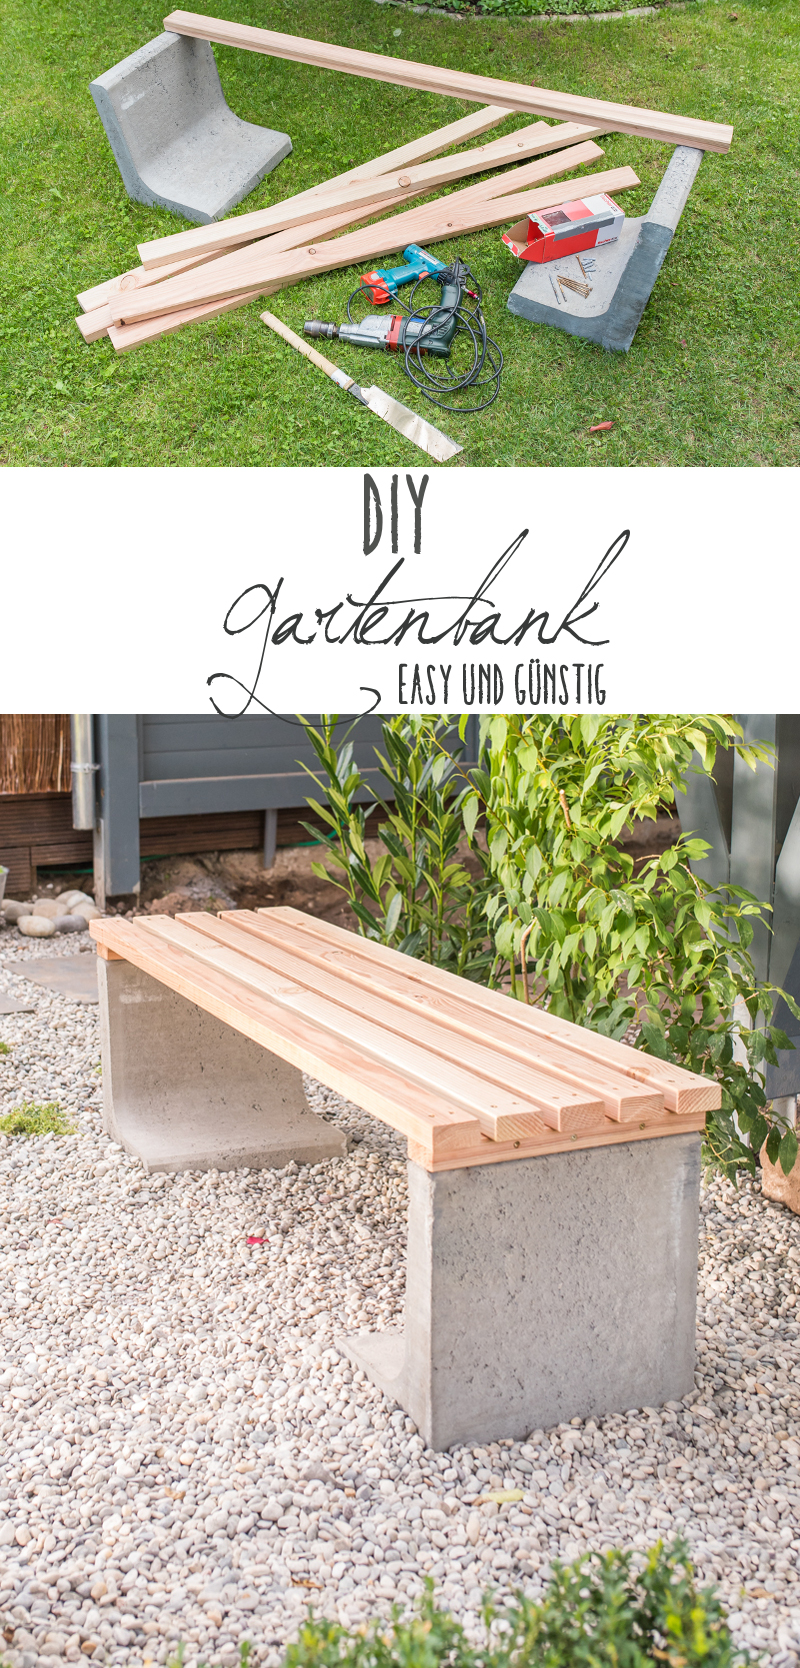 Anleitung für eine einfache selbst gemachte DIY Gartenbank aus Beton und Holz als easy Deko Projekt für den Garten